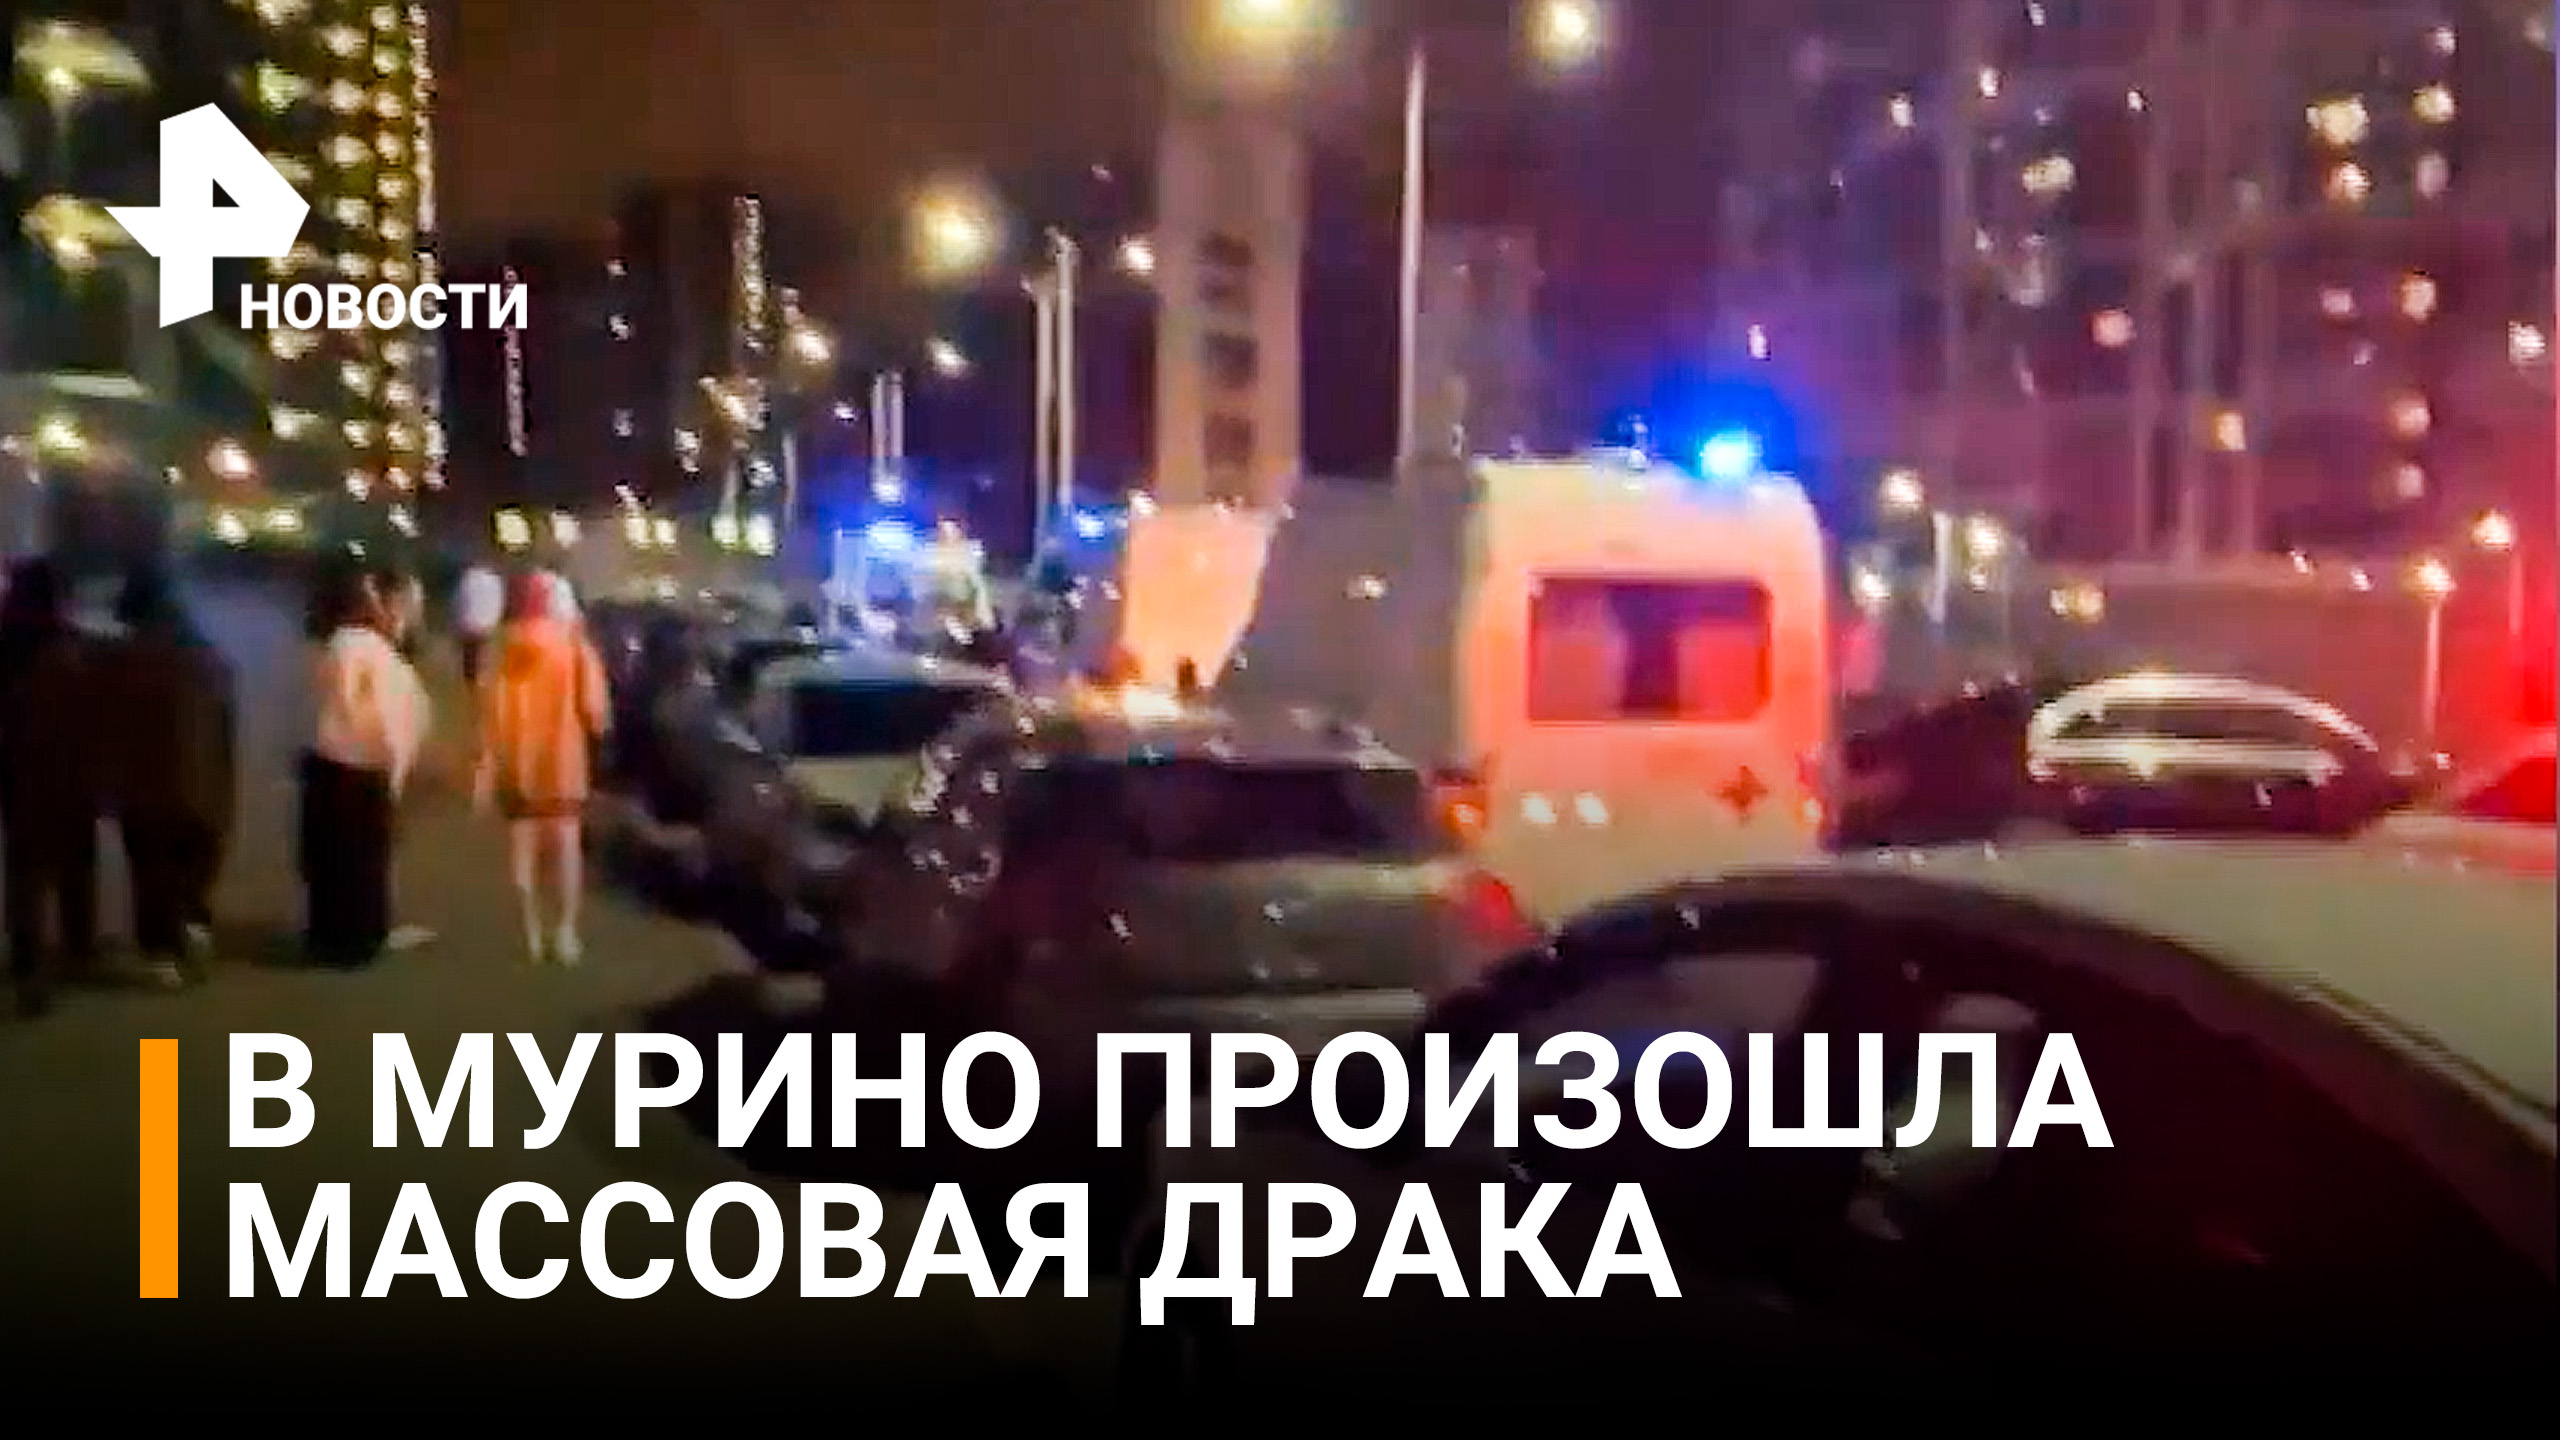 Массовая драка со стрельбой в Петербурге попала на видео / РЕН Новости